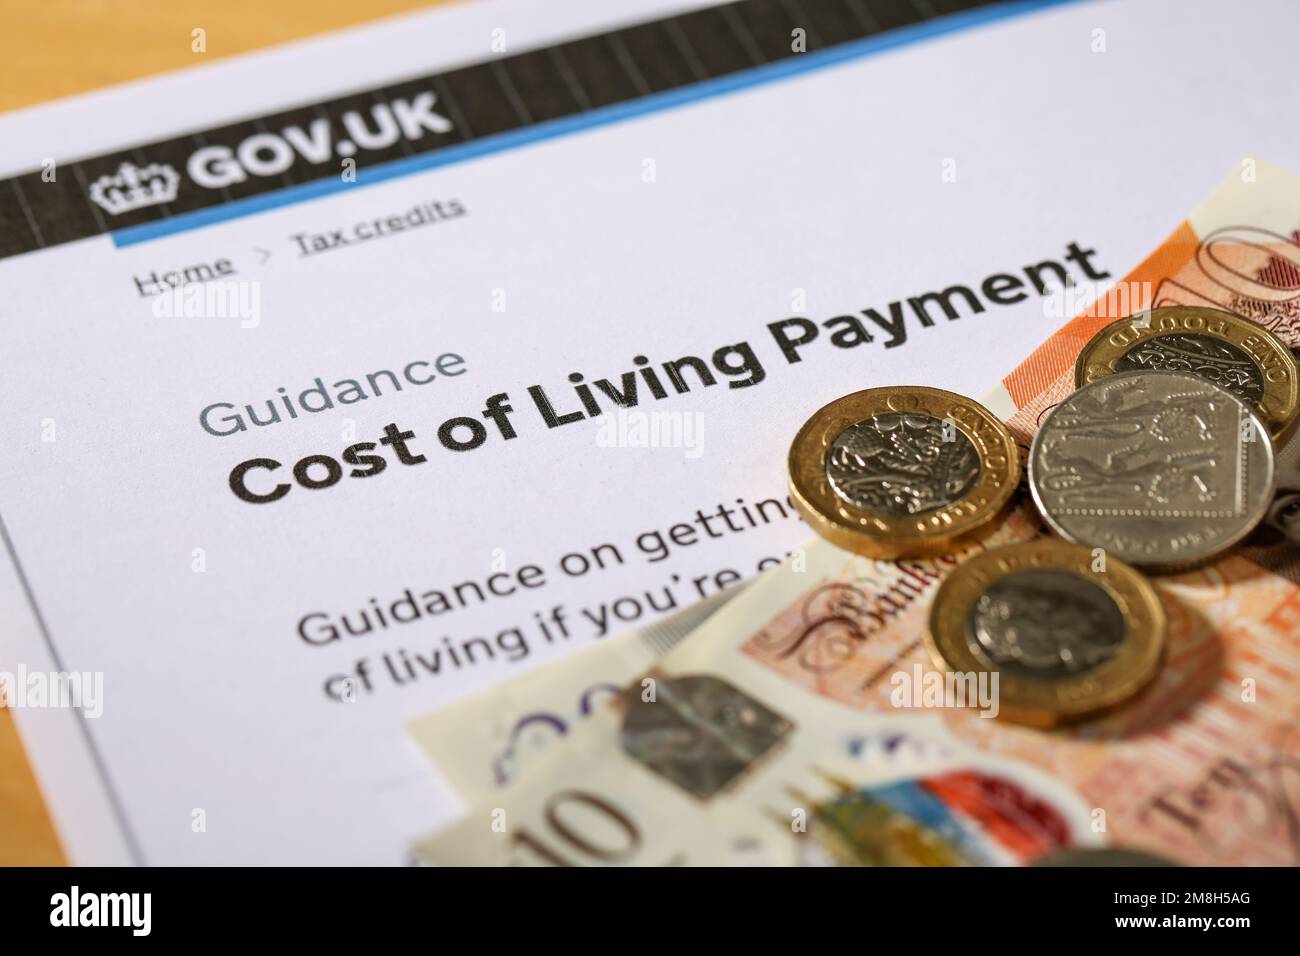 Costo della crisi vivente nel Regno Unito. Il governo britannico ha pagato il costo della vita per sostenere le persone con determinati benifit o crediti d'imposta. Foto Stock